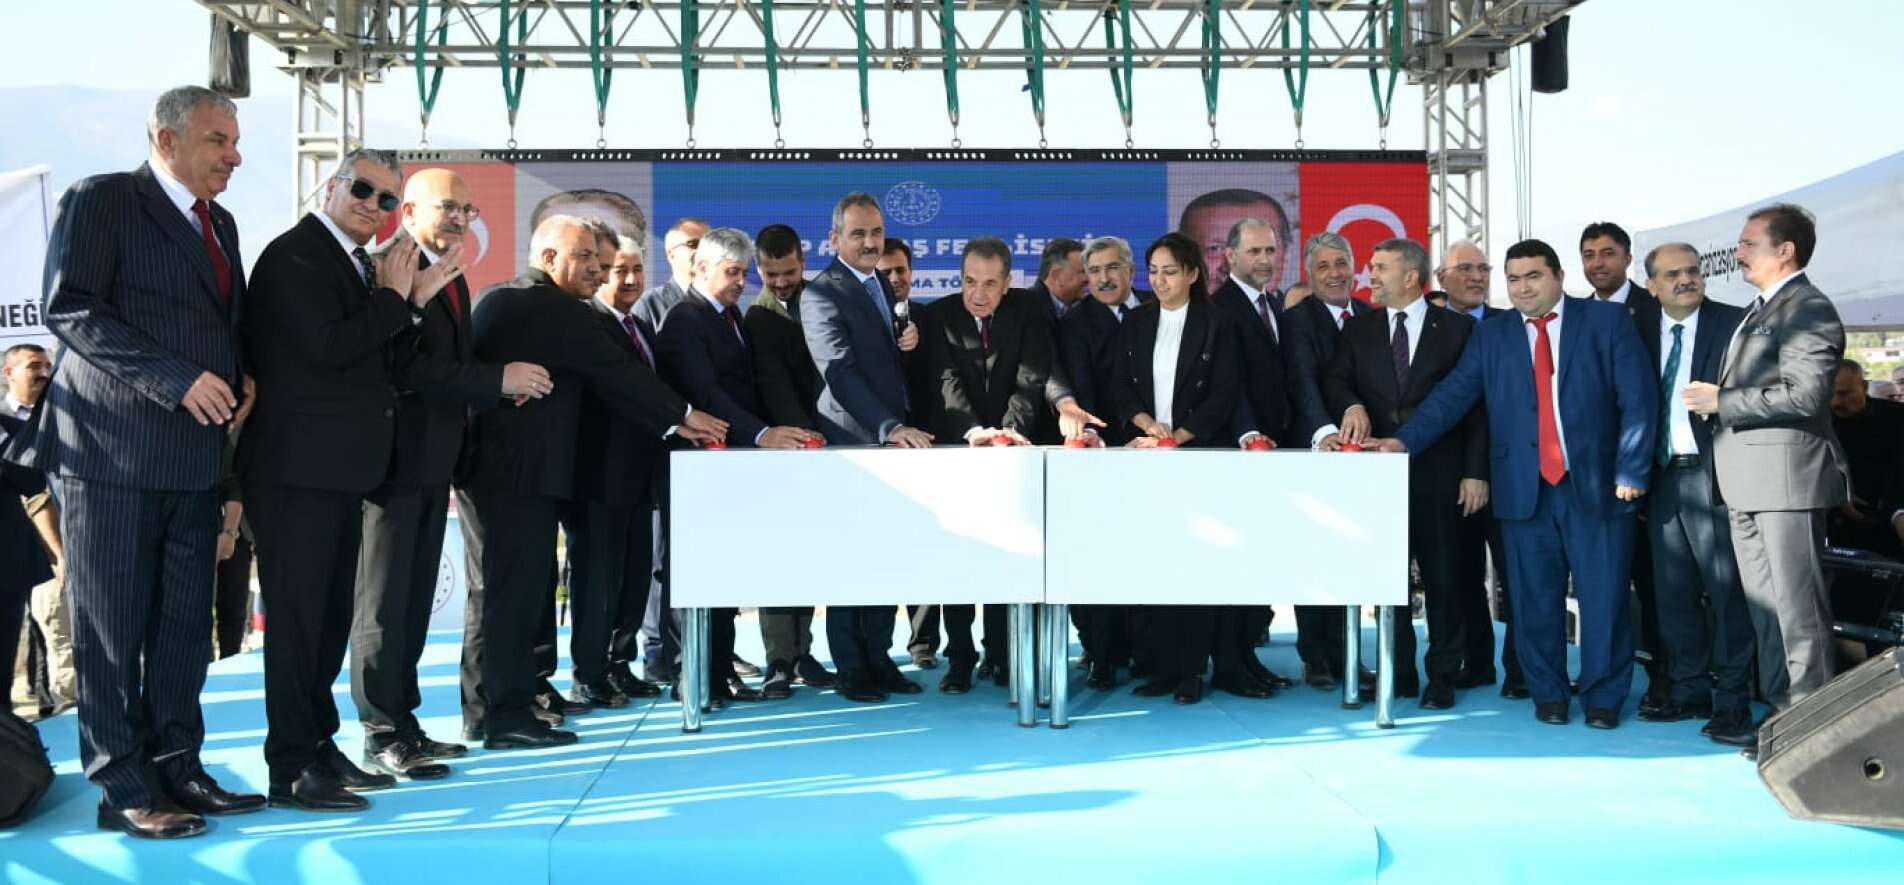 Bursa'da trafiğin düğüm noktası çözüldü... Acemler artık nefes alacak - 06/12/2022